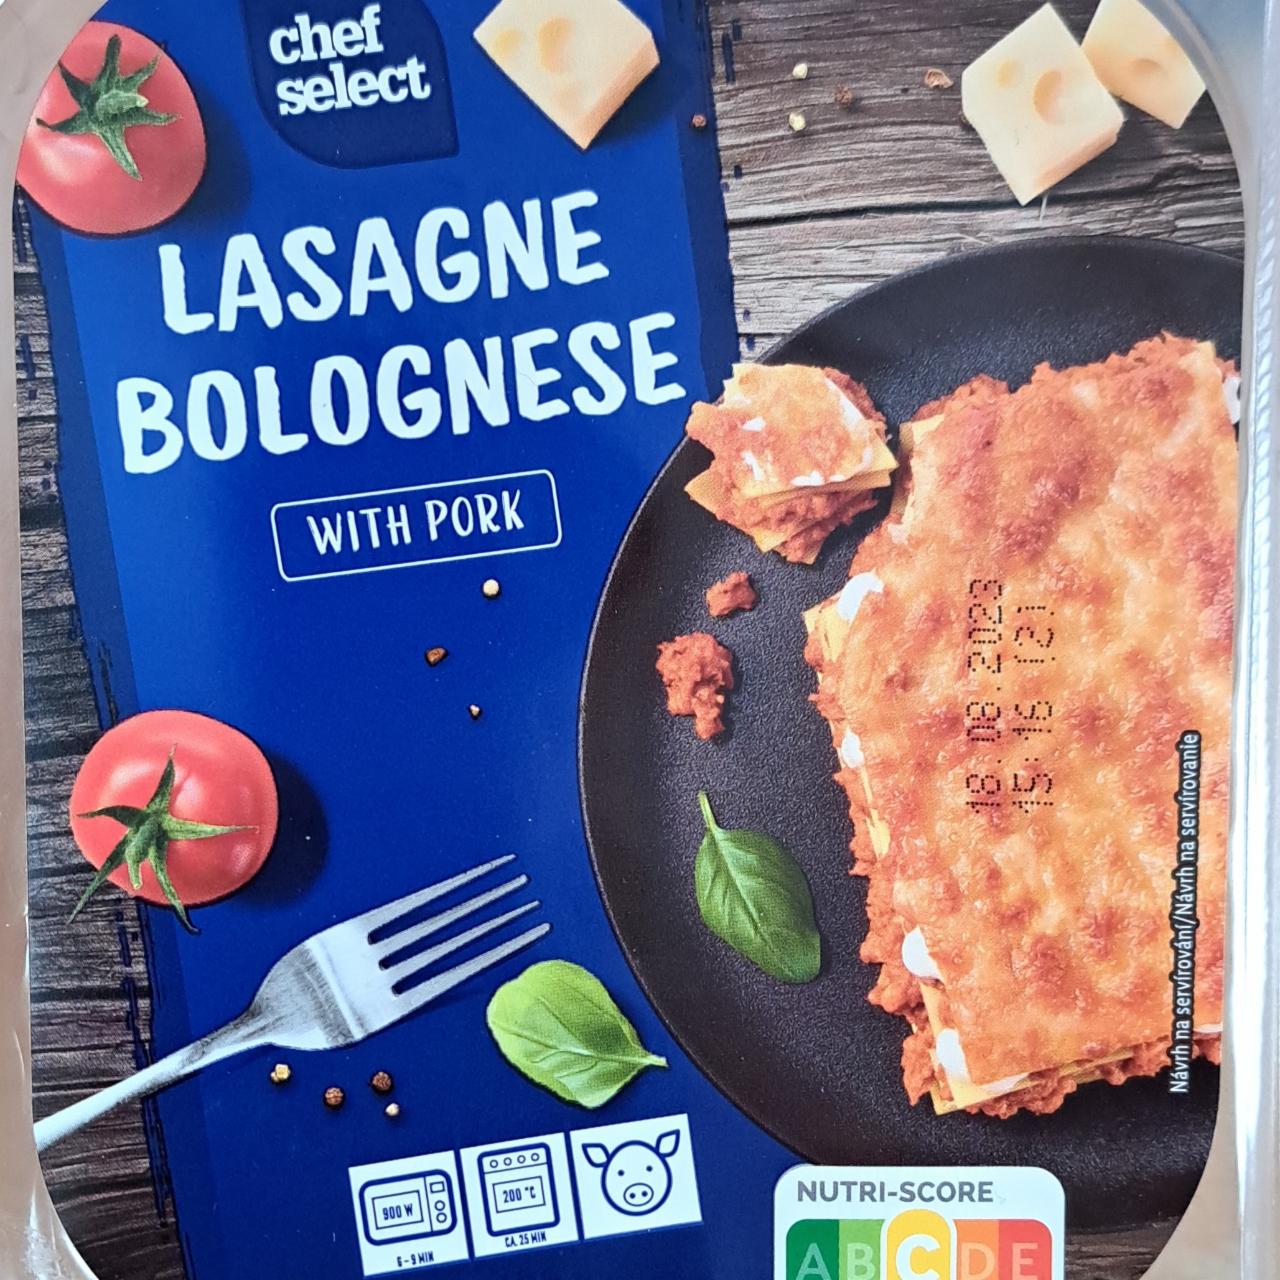 Select - with pork nutriční kalorie, Lasagne kJ Bolognese Chef a hodnoty